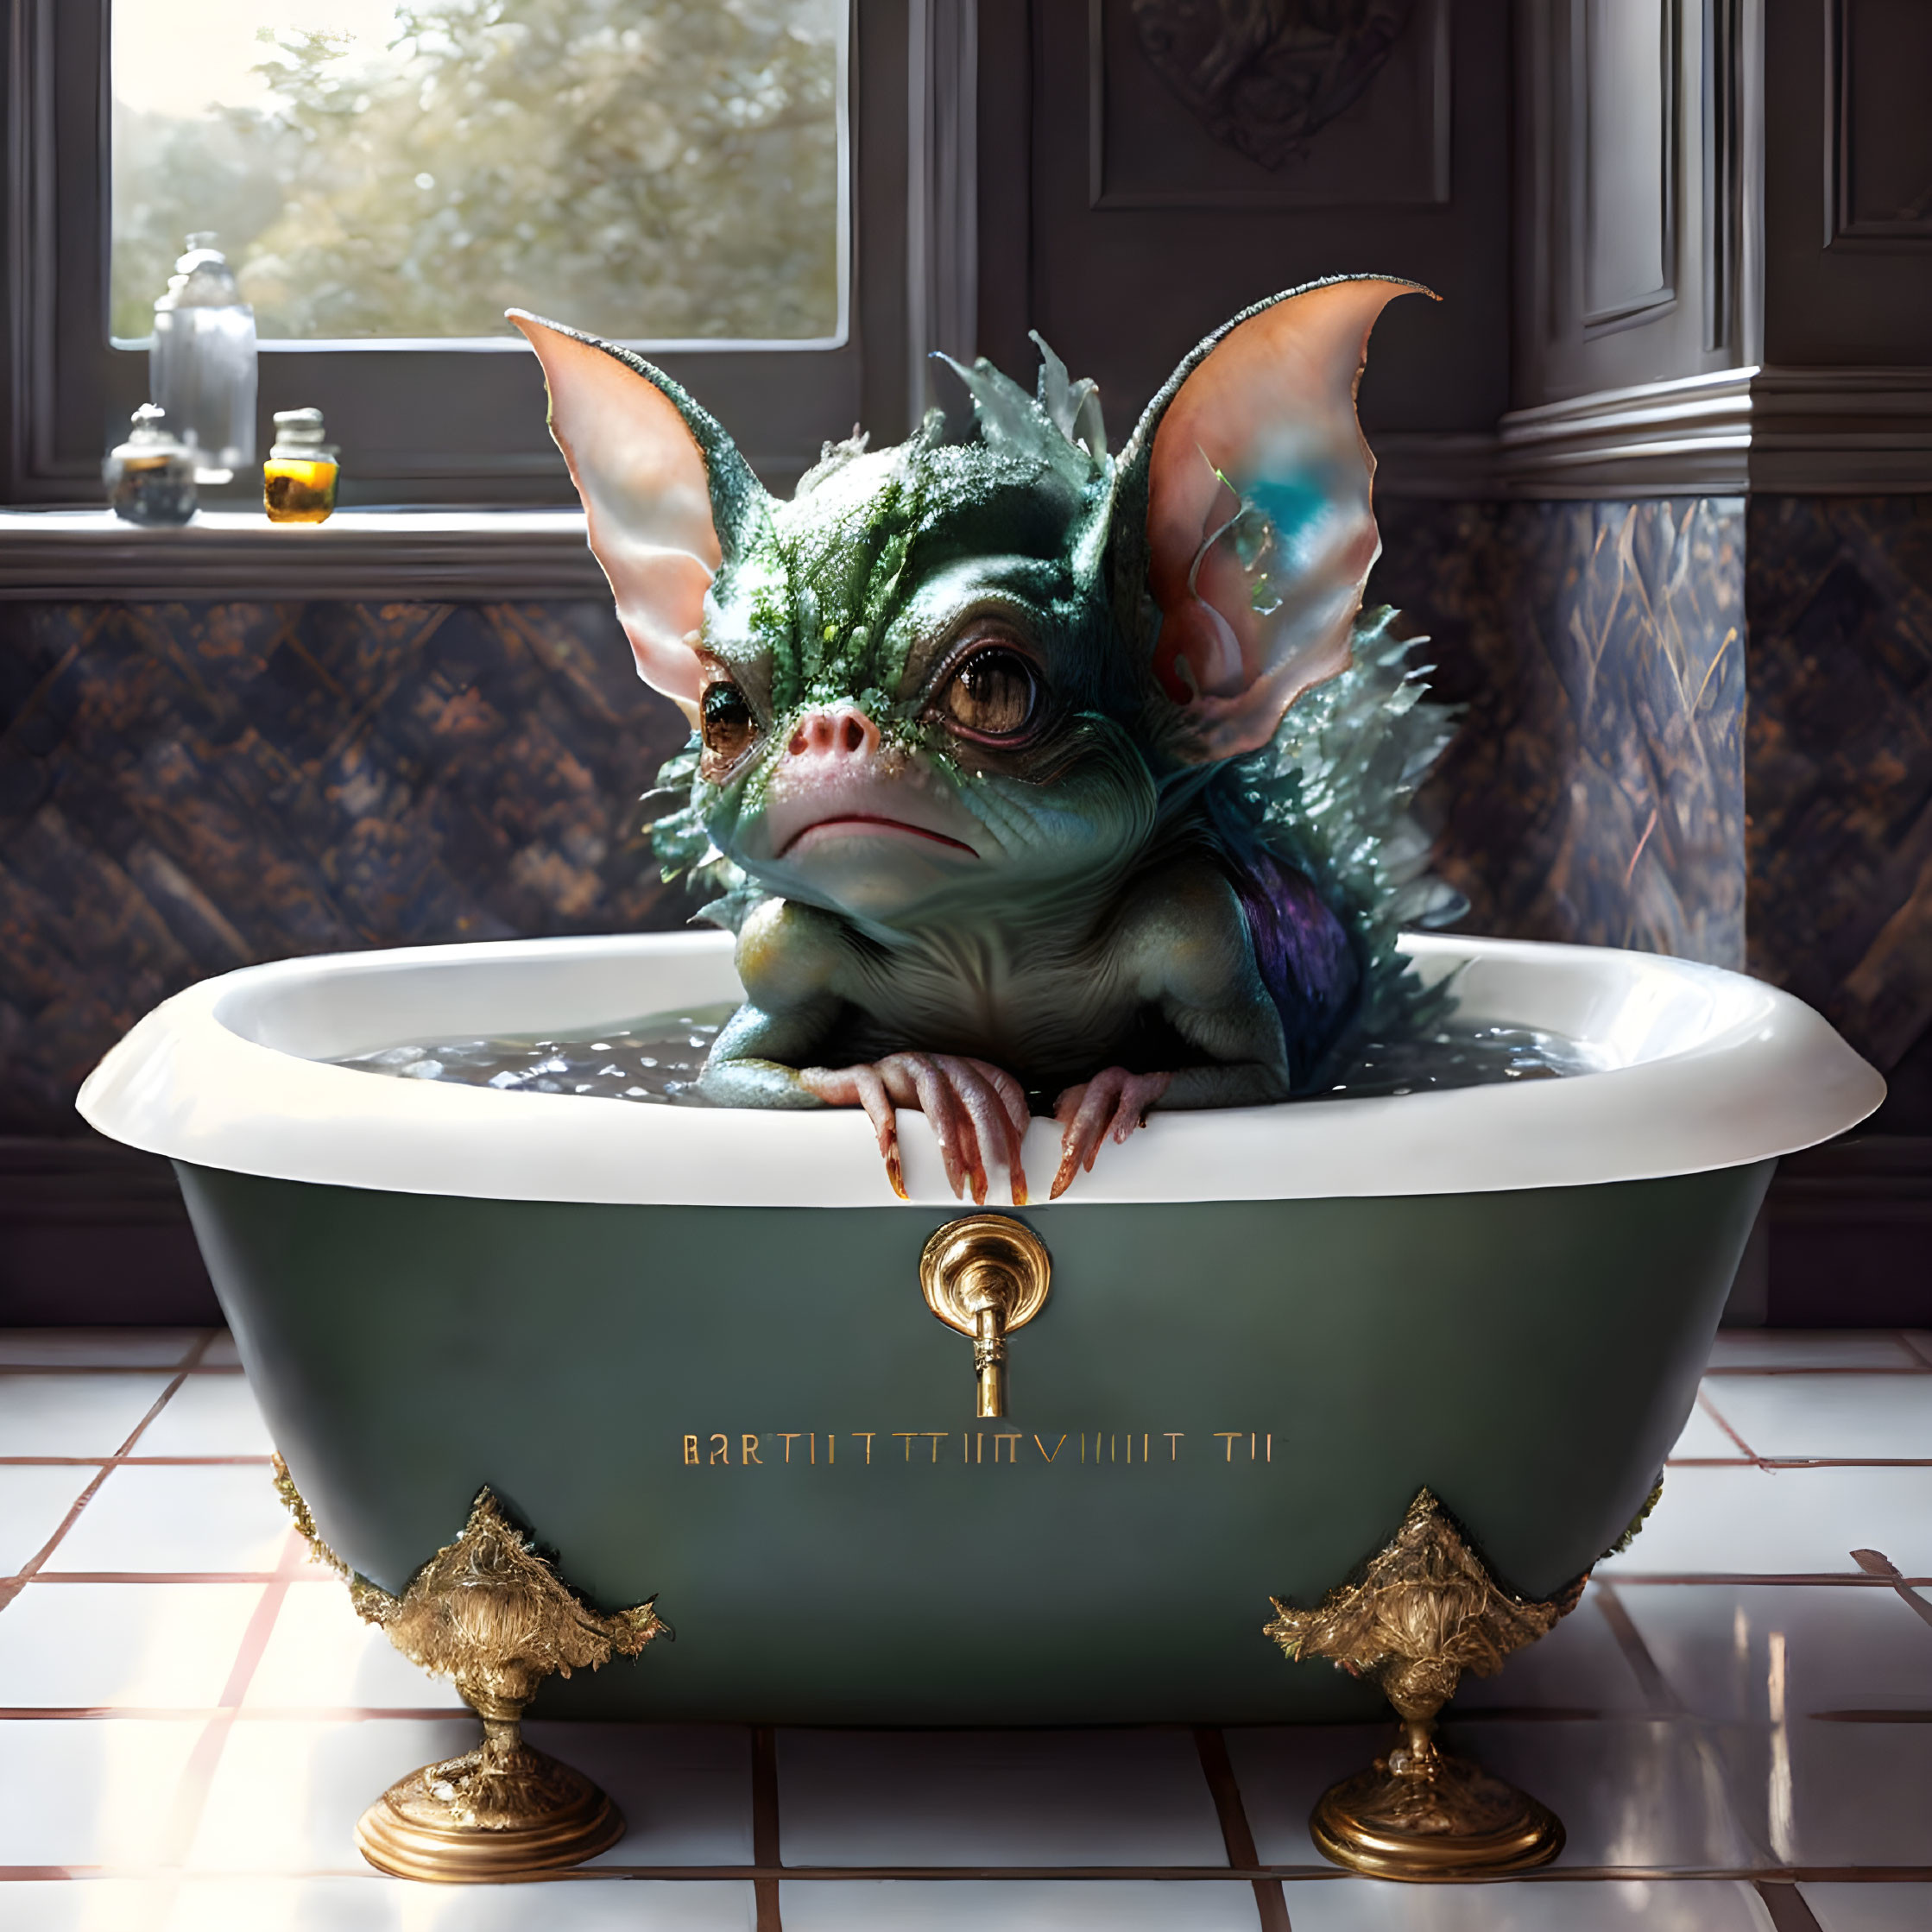 A portrait of a gremlin sits in a bathtub